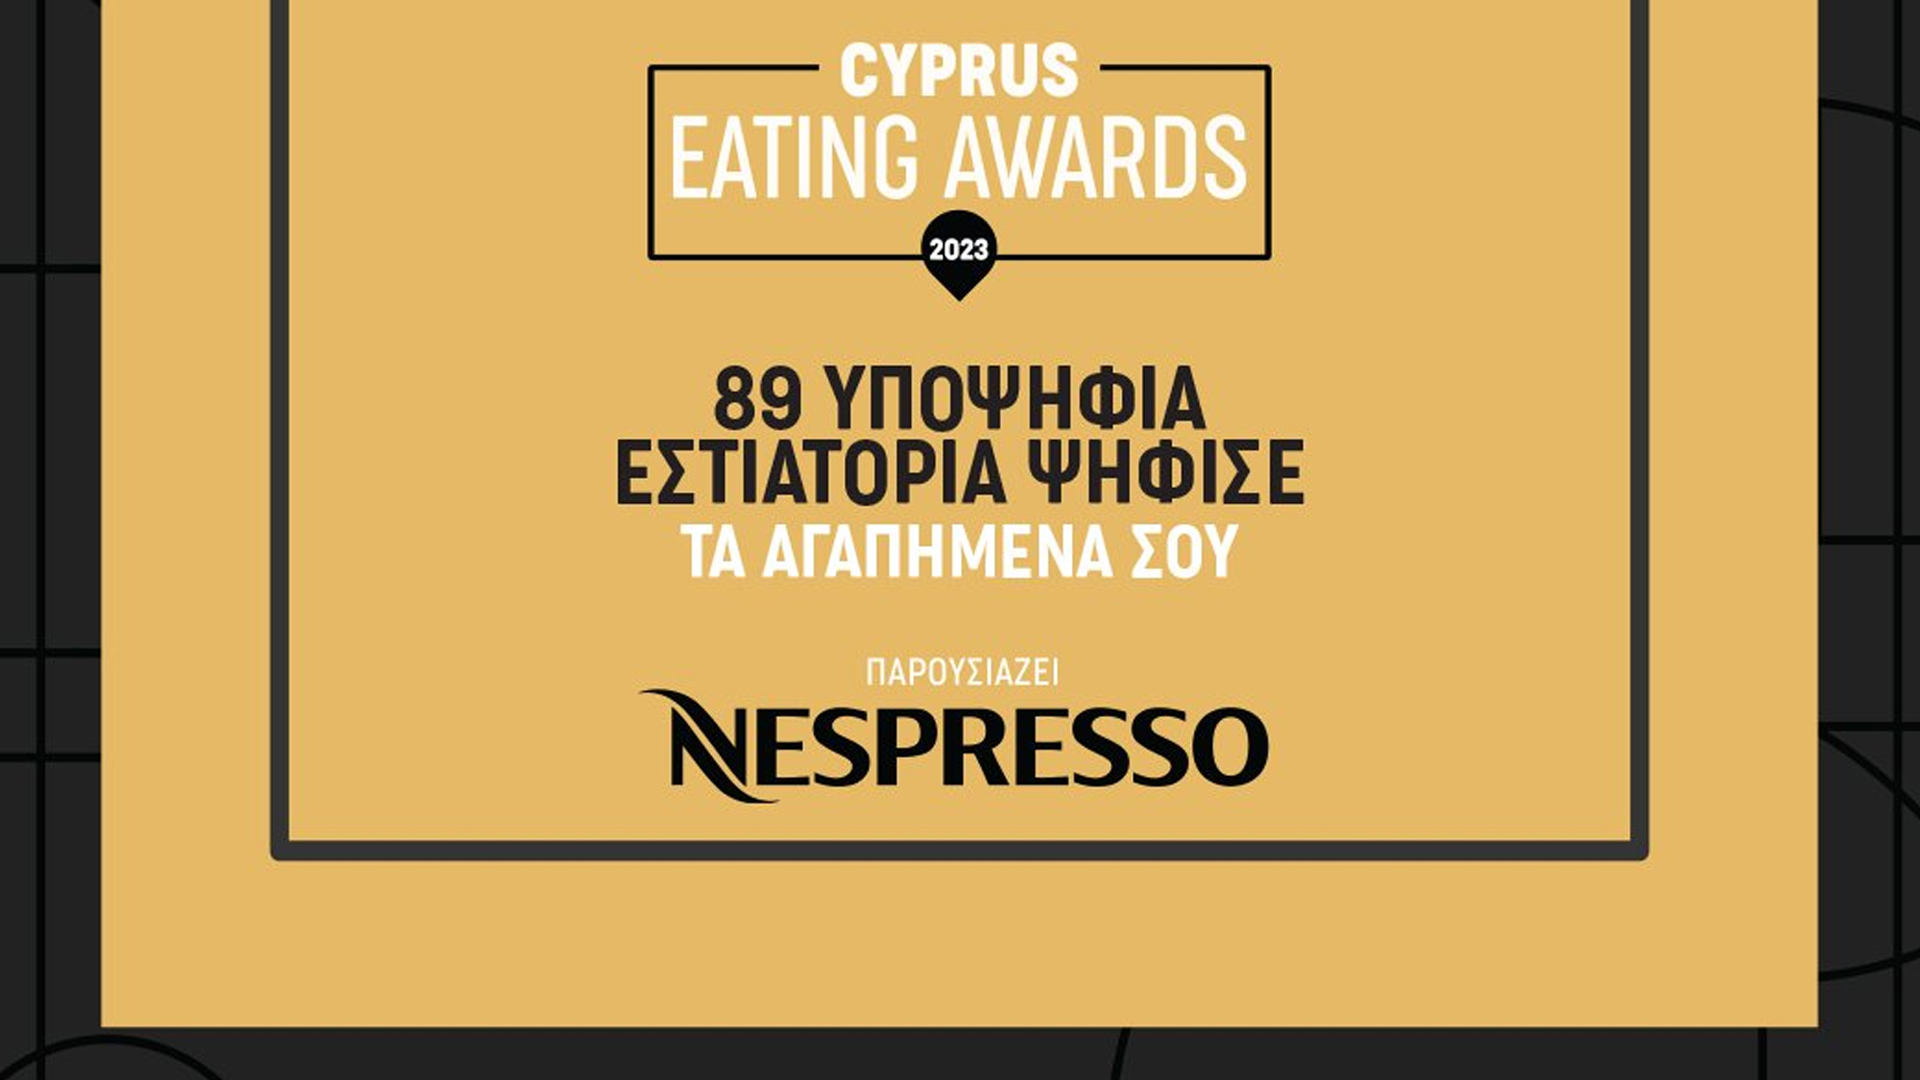 Στήριξη τοπικών επιχειρήσεων Επαρχίας Αμμοχώστου που είναι υποψήφιες στα βραβεία Cyprus Eating Awards 2023